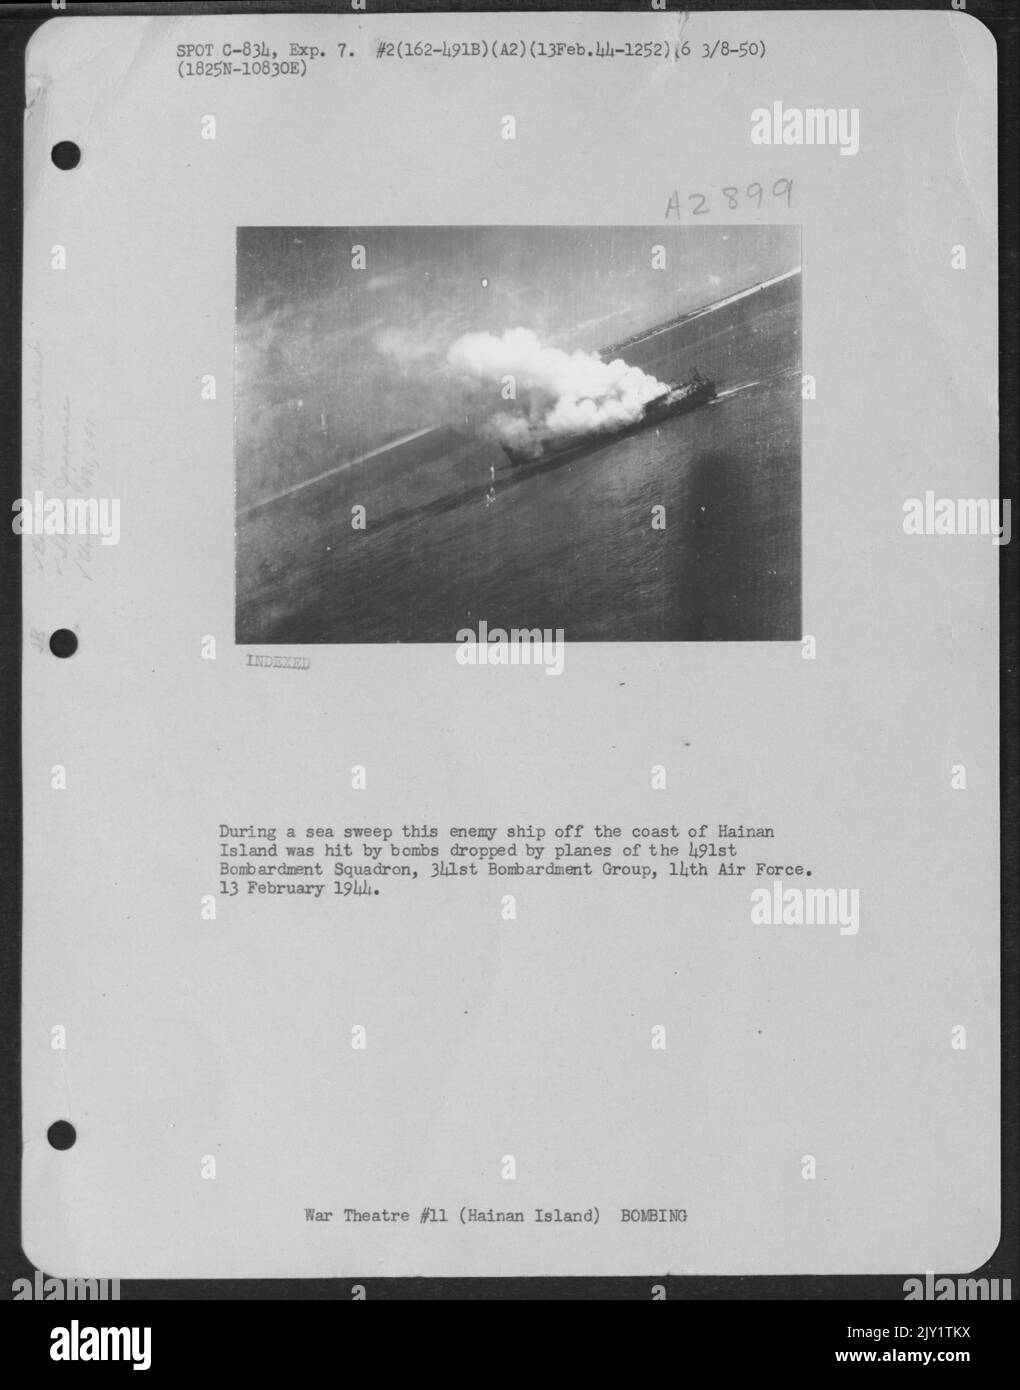 Während Einer Seerechtung wurde dieses feindliche Schiff vor der Küste der Insel Hainan von Bomben getroffen, die von Flugzeugen des Bombardements Squadron 491St, der Bombardement Group 341St, der Air Force 14., am 13. Februar 1944 abgeworfen wurden. Stockfoto